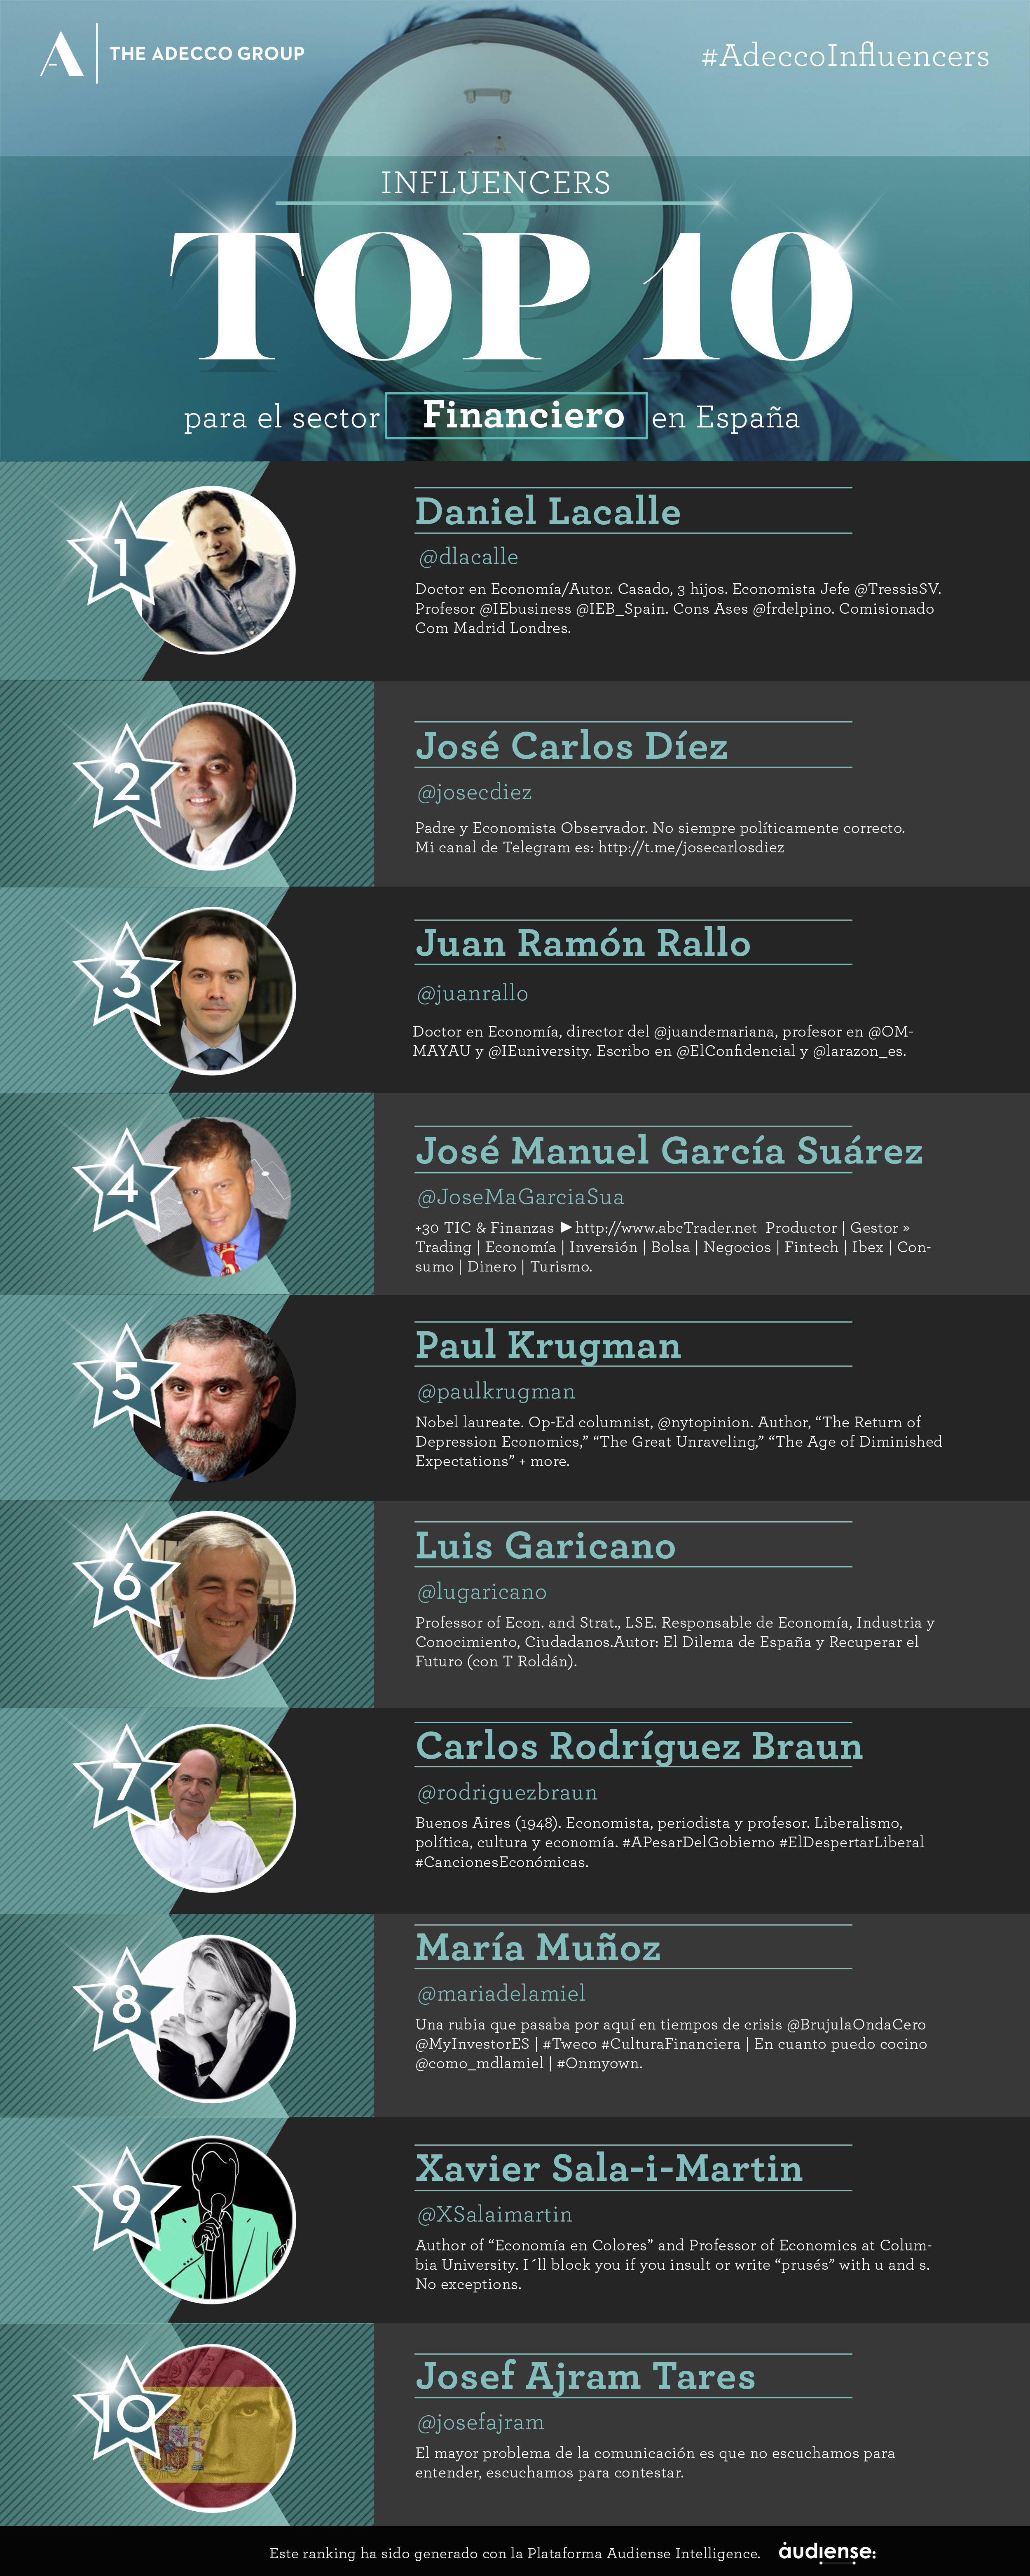 Top 10 influencers del sector financiero en España